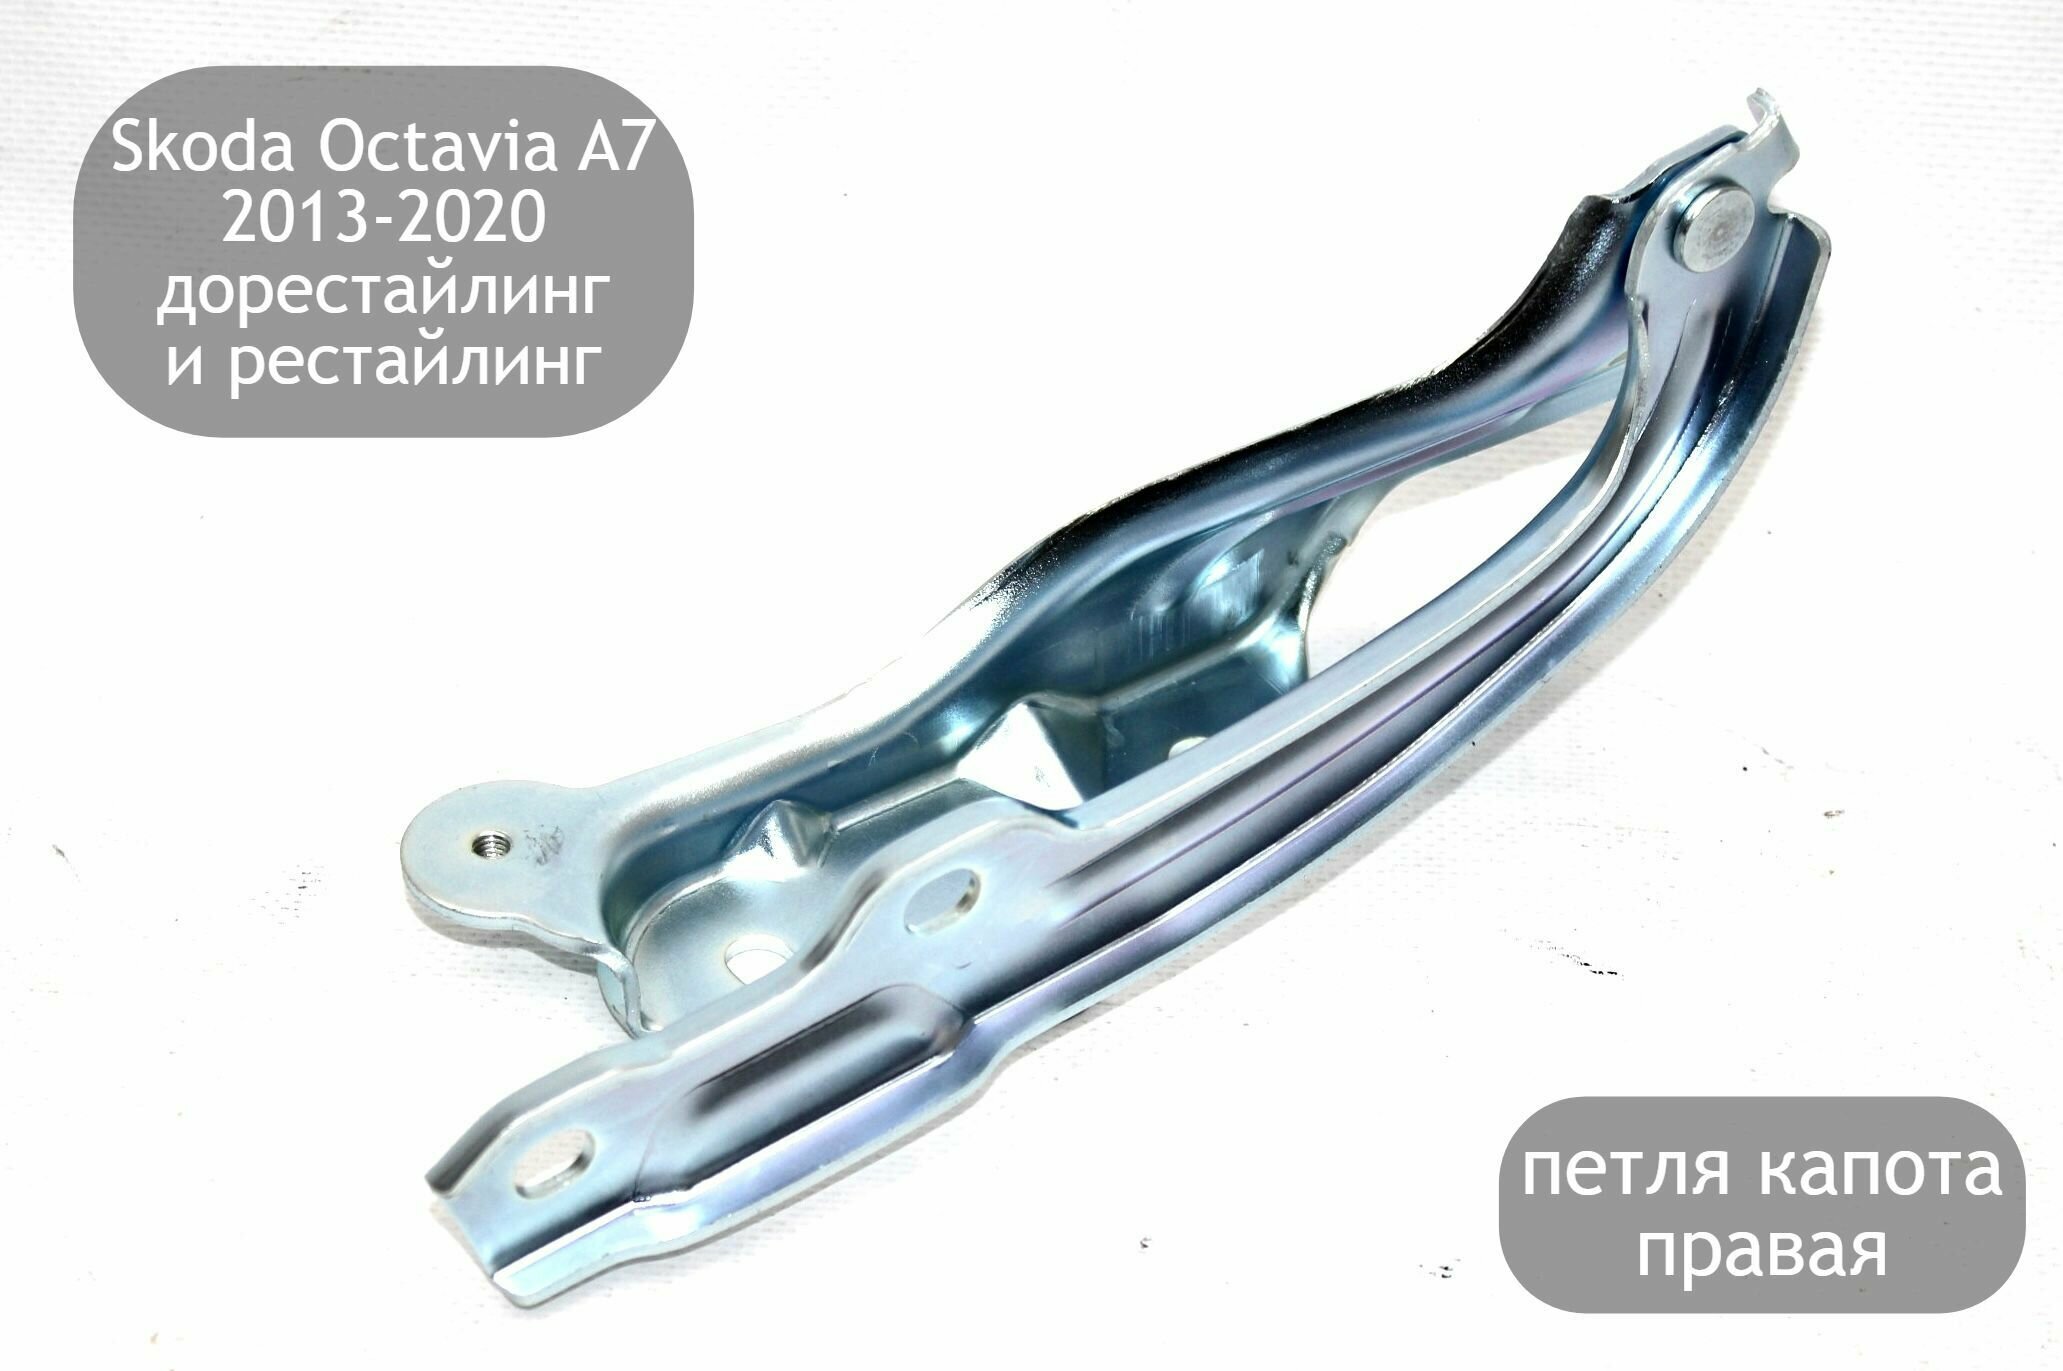 Петля капота правая для Skoda Octavia A7 2013-2020 (дорестайлинг и рестайлинг)